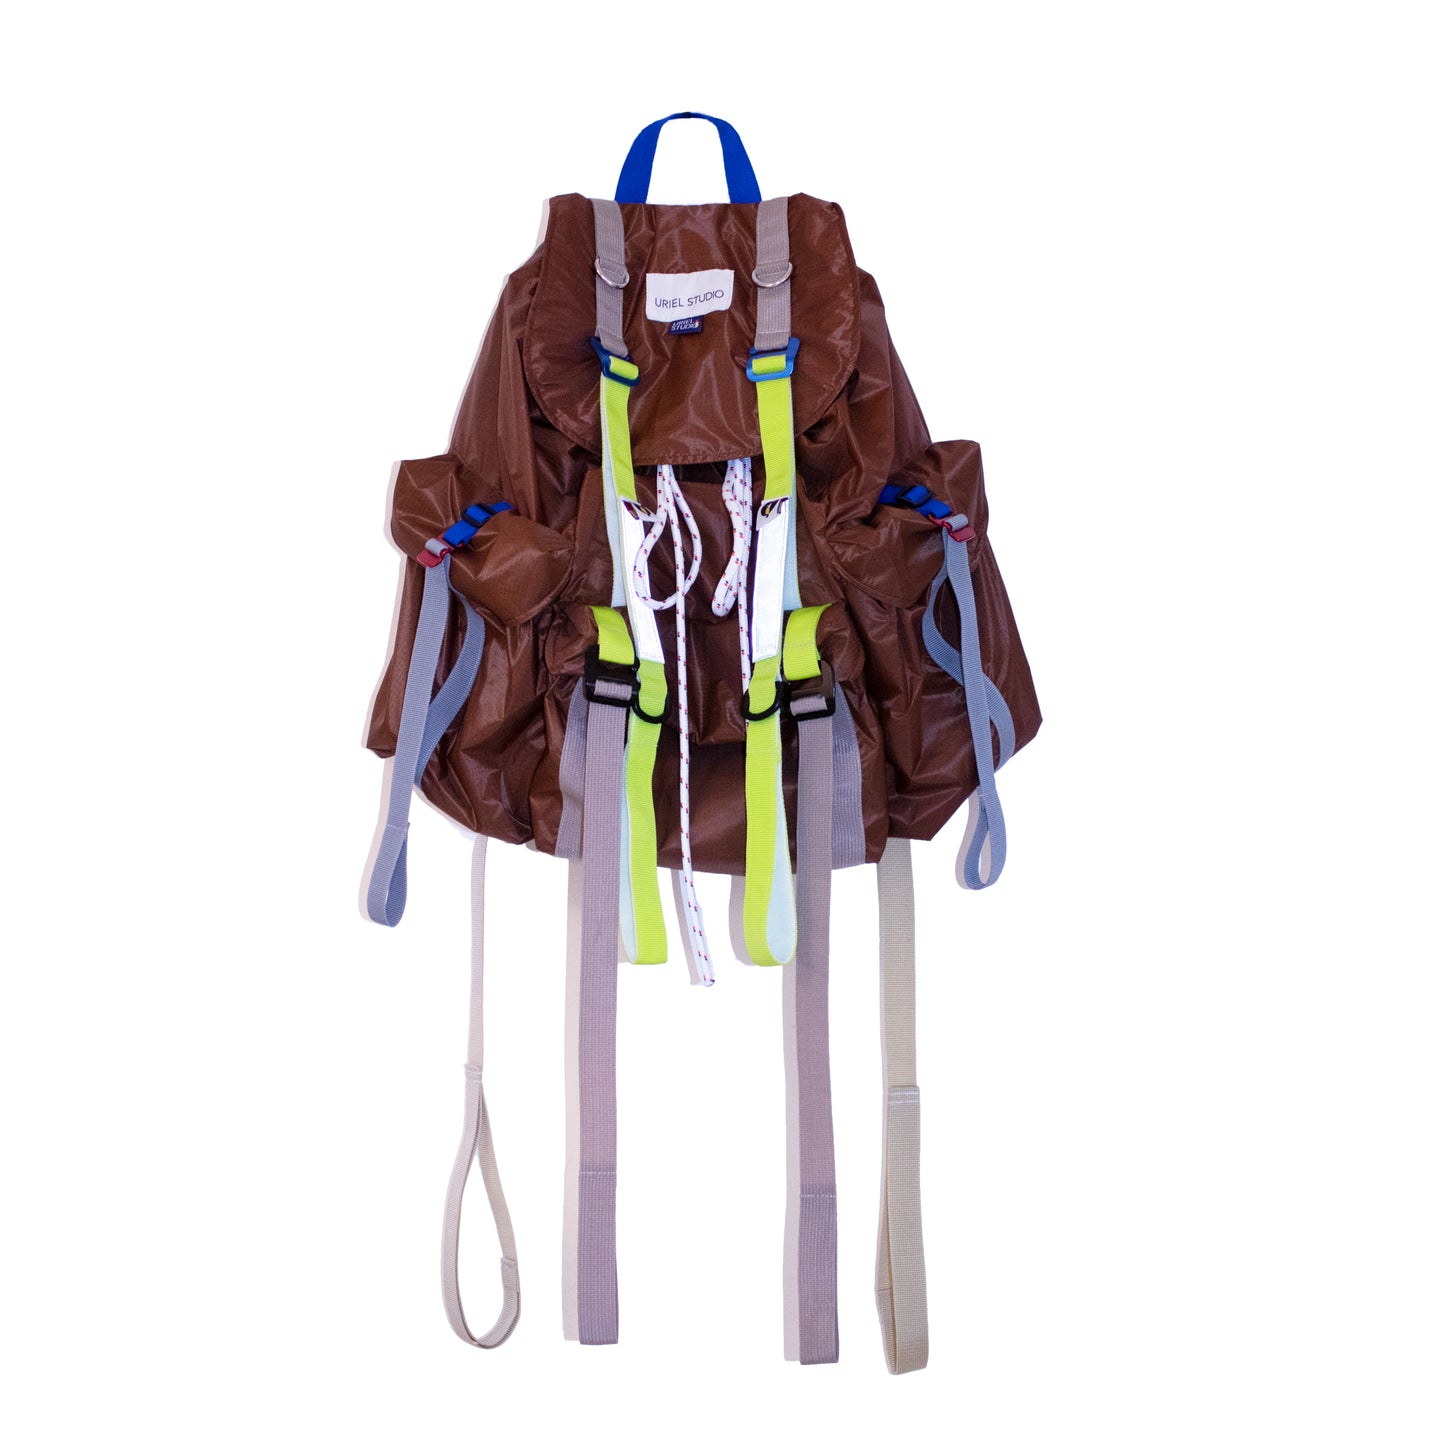 Nexus Oversized Backpack In Light Weight Brown Ripstop - Uriel Studio